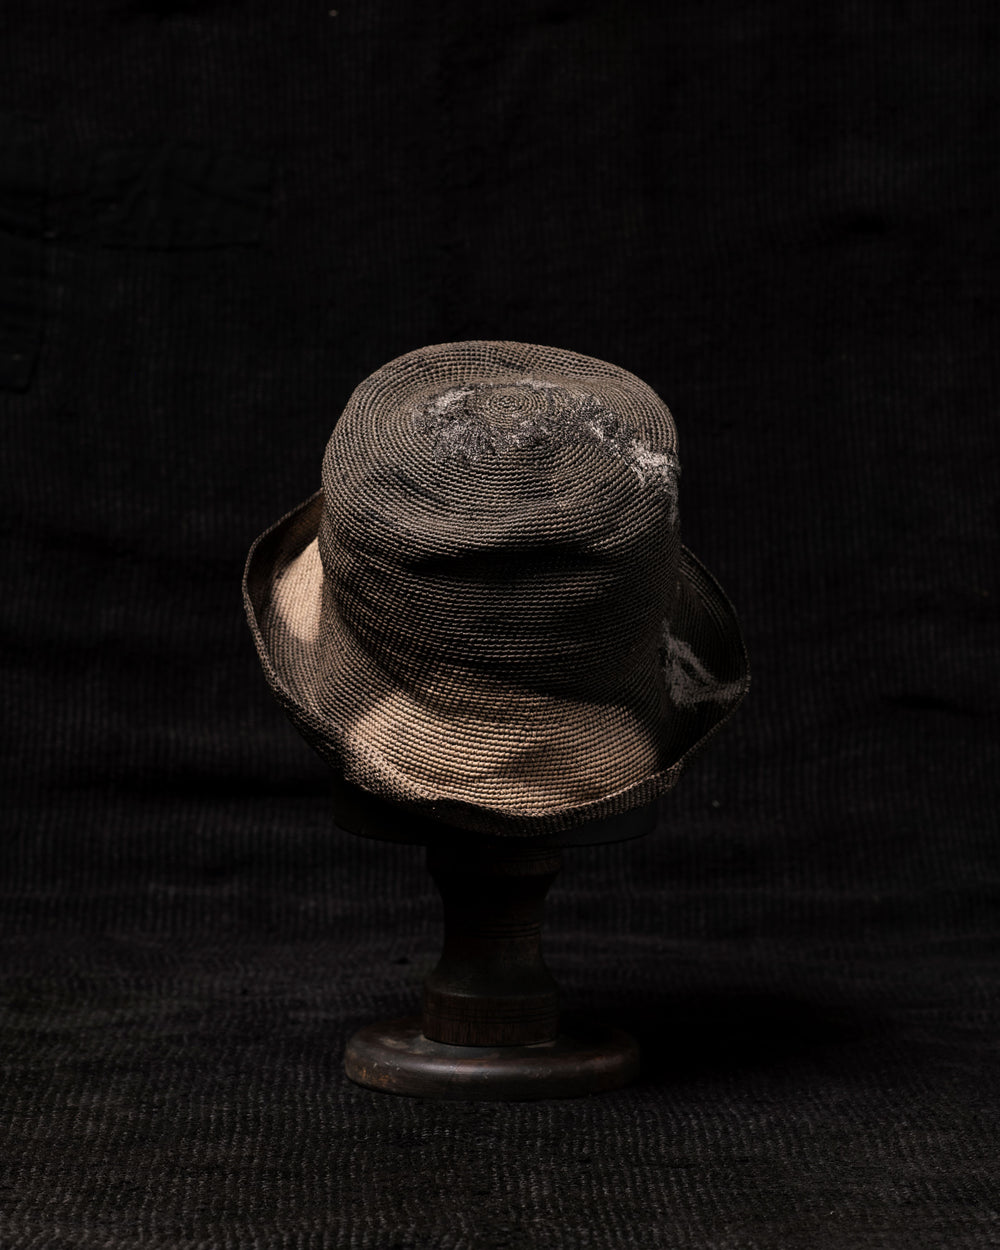 OOAK23 No. 83 Toquilla Straw Hat 58.5 cm